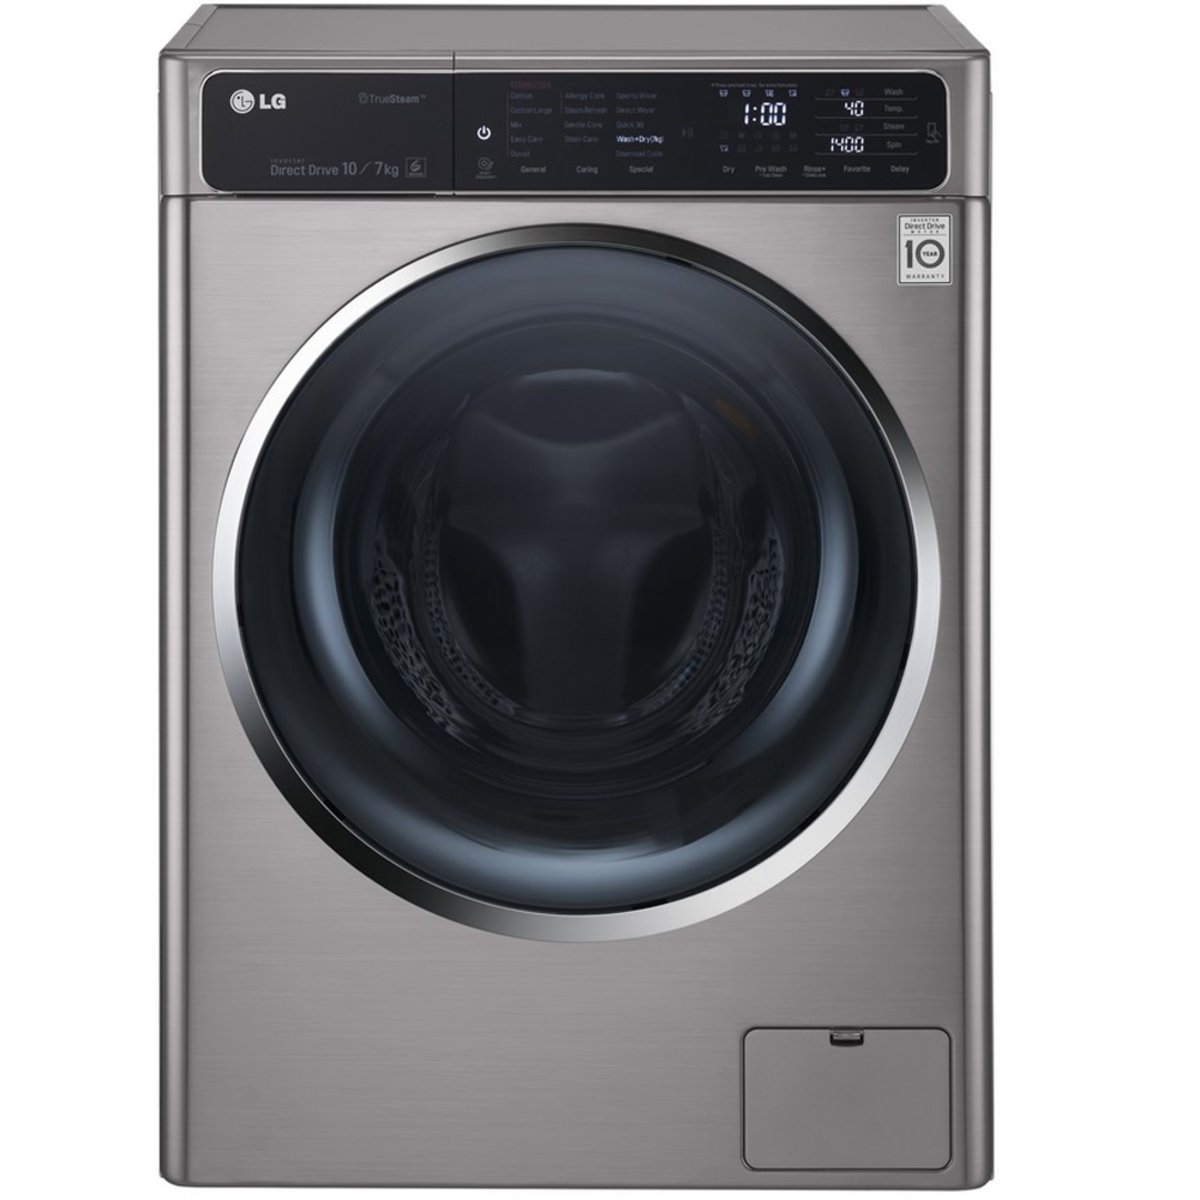 LG Front Load Washer & Dryer FH4U1BHK6N 10/7Kg